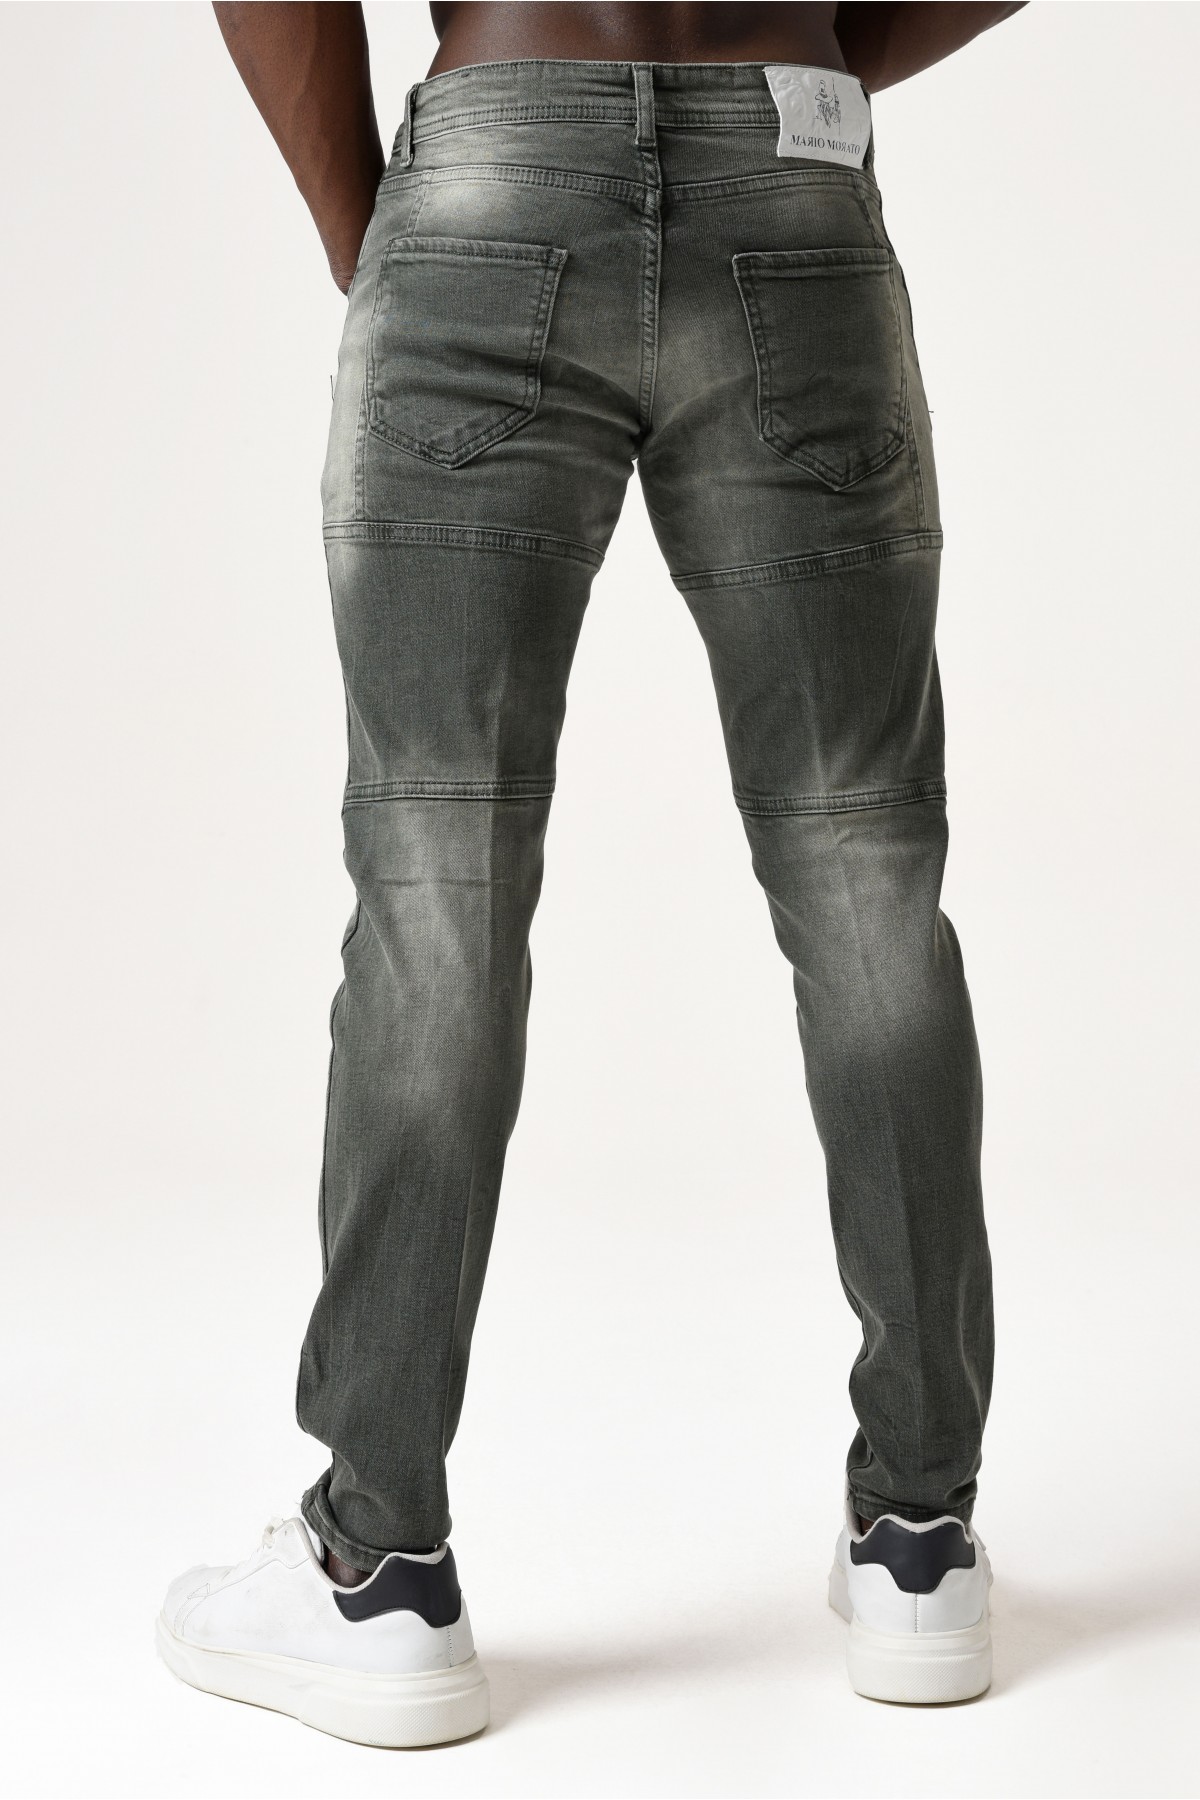 Erkek Denim Pantolon - Parçalı Yırtıklı Model - Koyu Yeşil